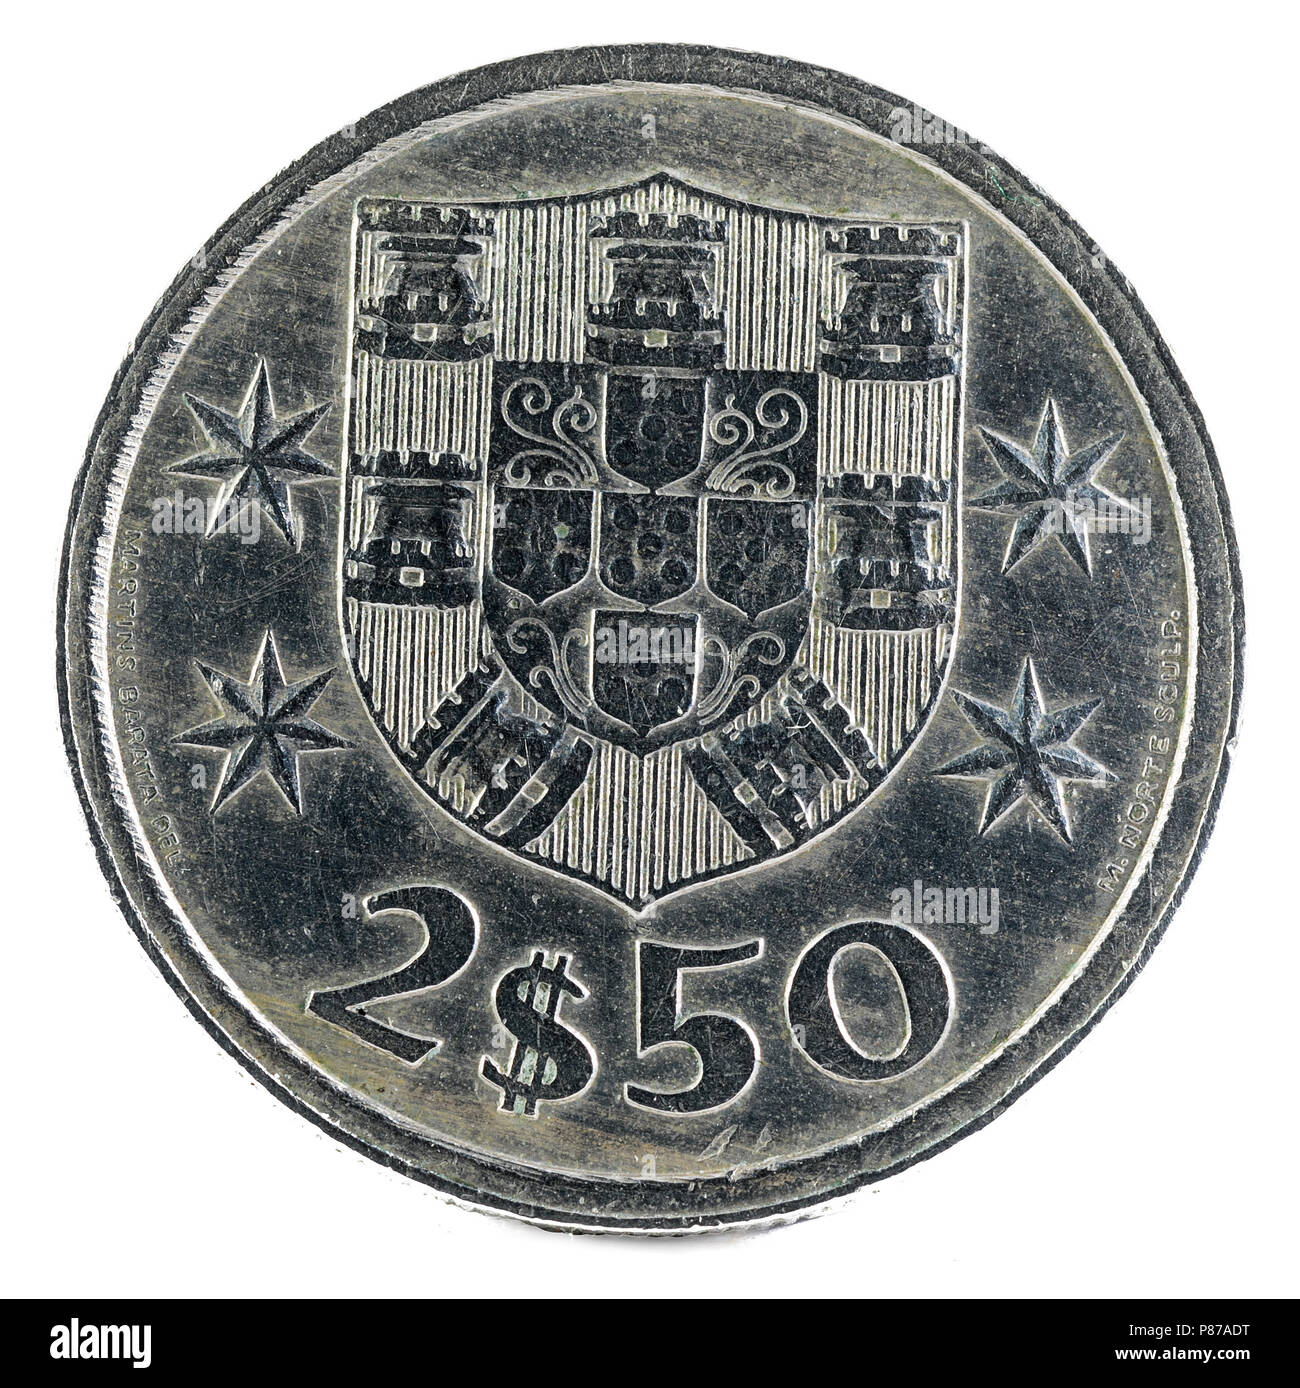 Old Portuguese coin. 2$50 Escudos. 1977. Reverse. Stock Photo